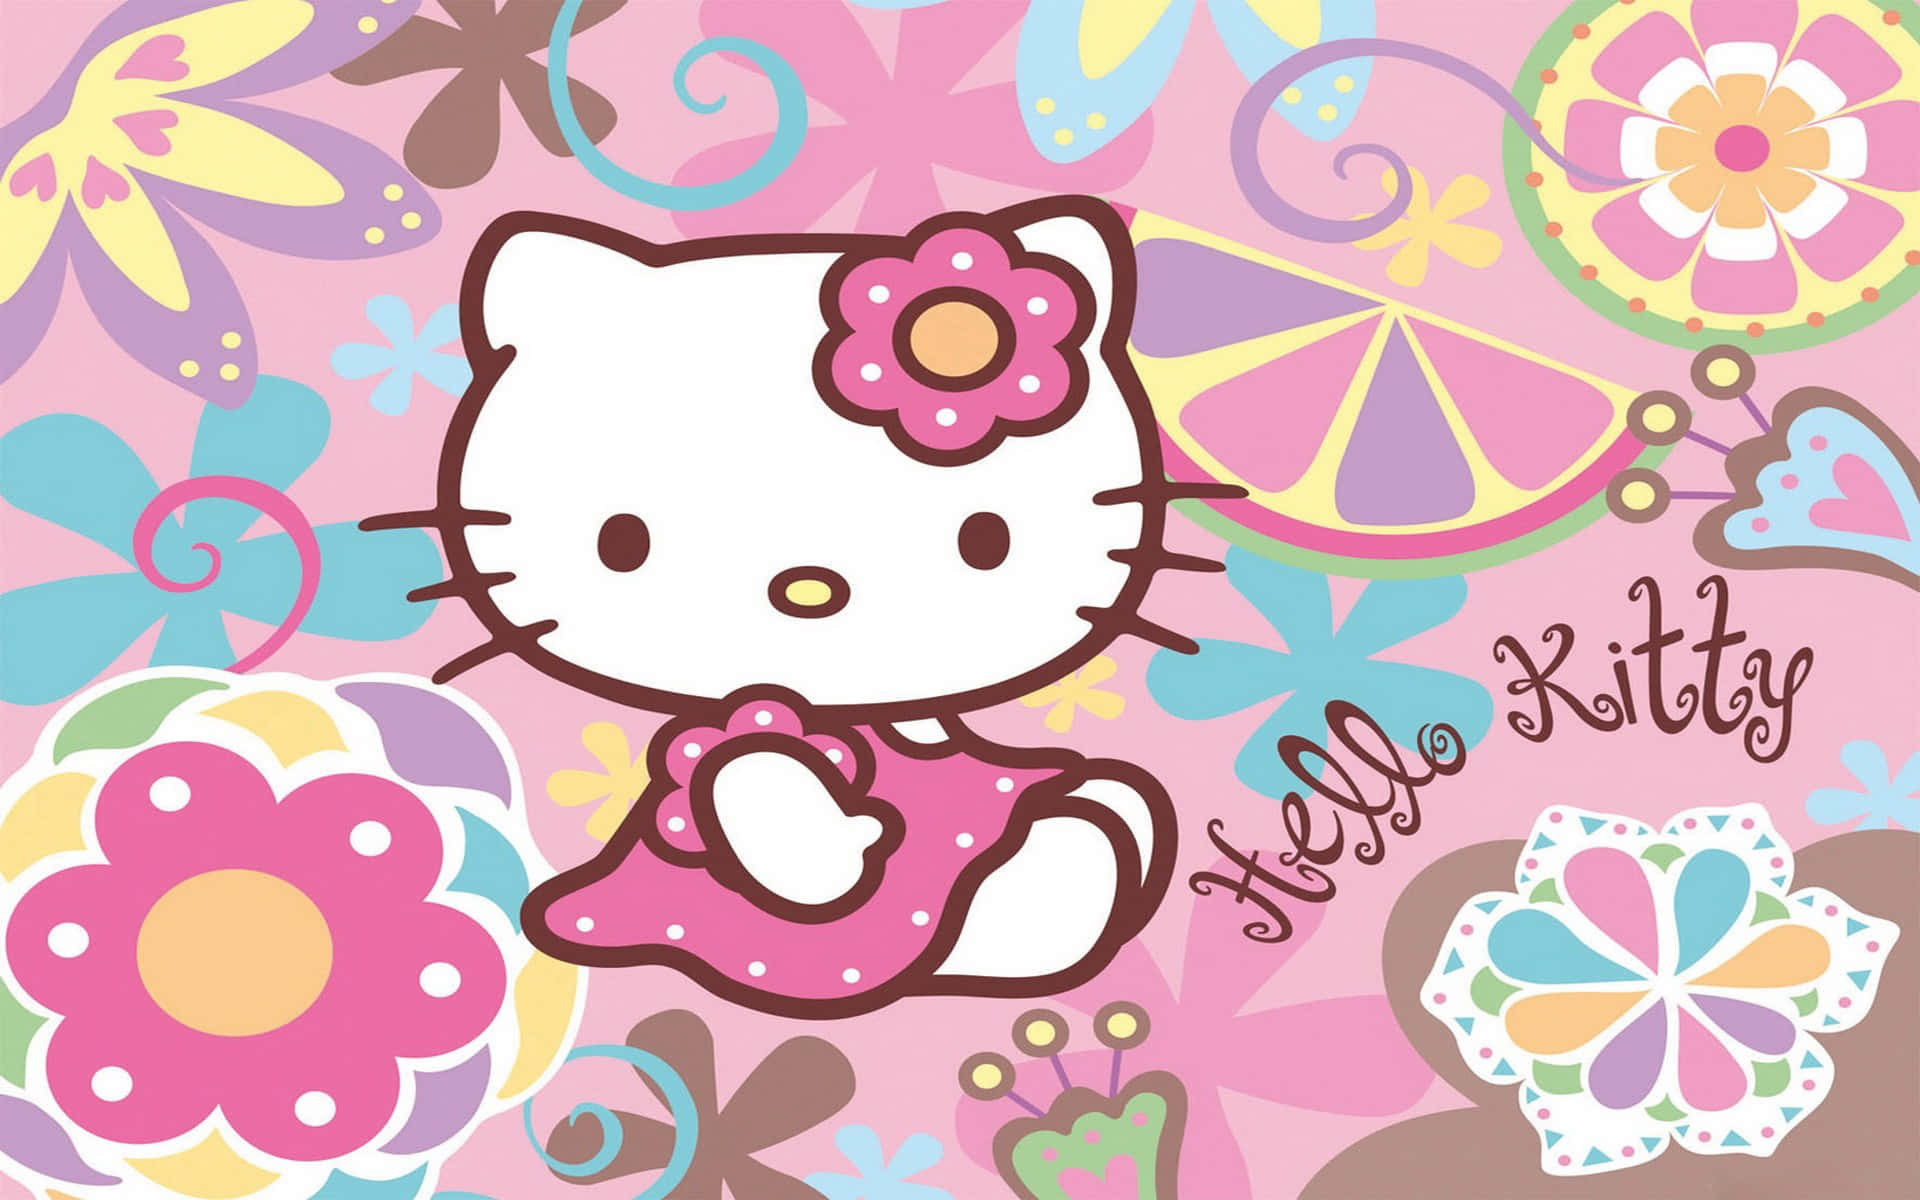 Ladedas Hello Kitty Pc Wallpaper Von Wallpapers.com Für All Deine Geräte Herunter. Wallpaper